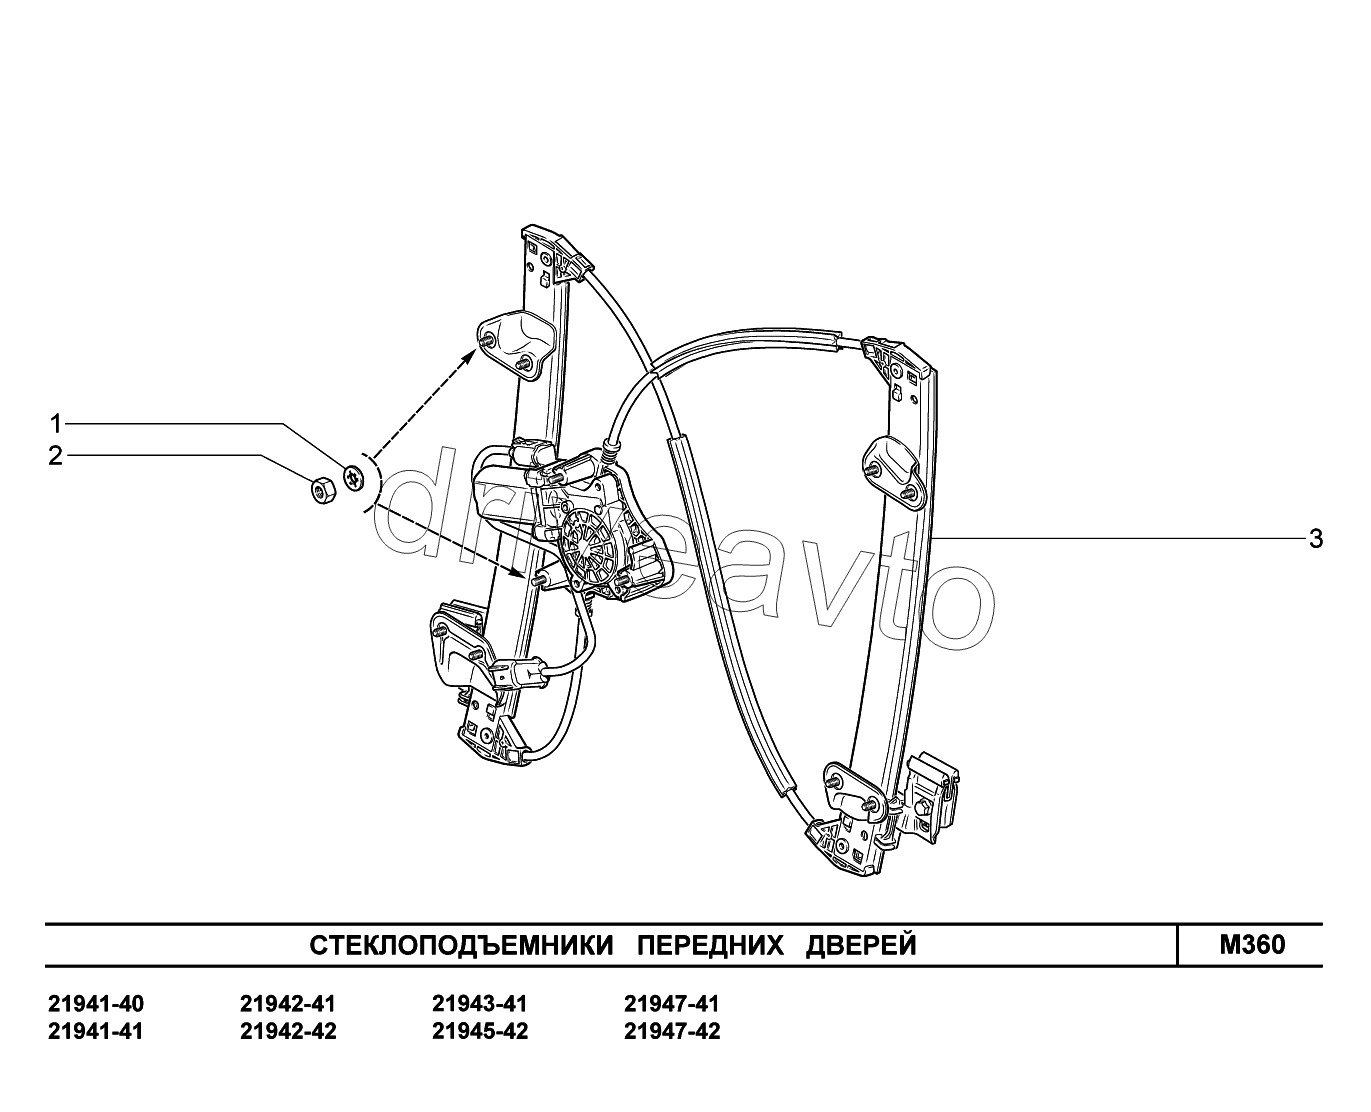 M360. Стеклоподъемники передних дверей